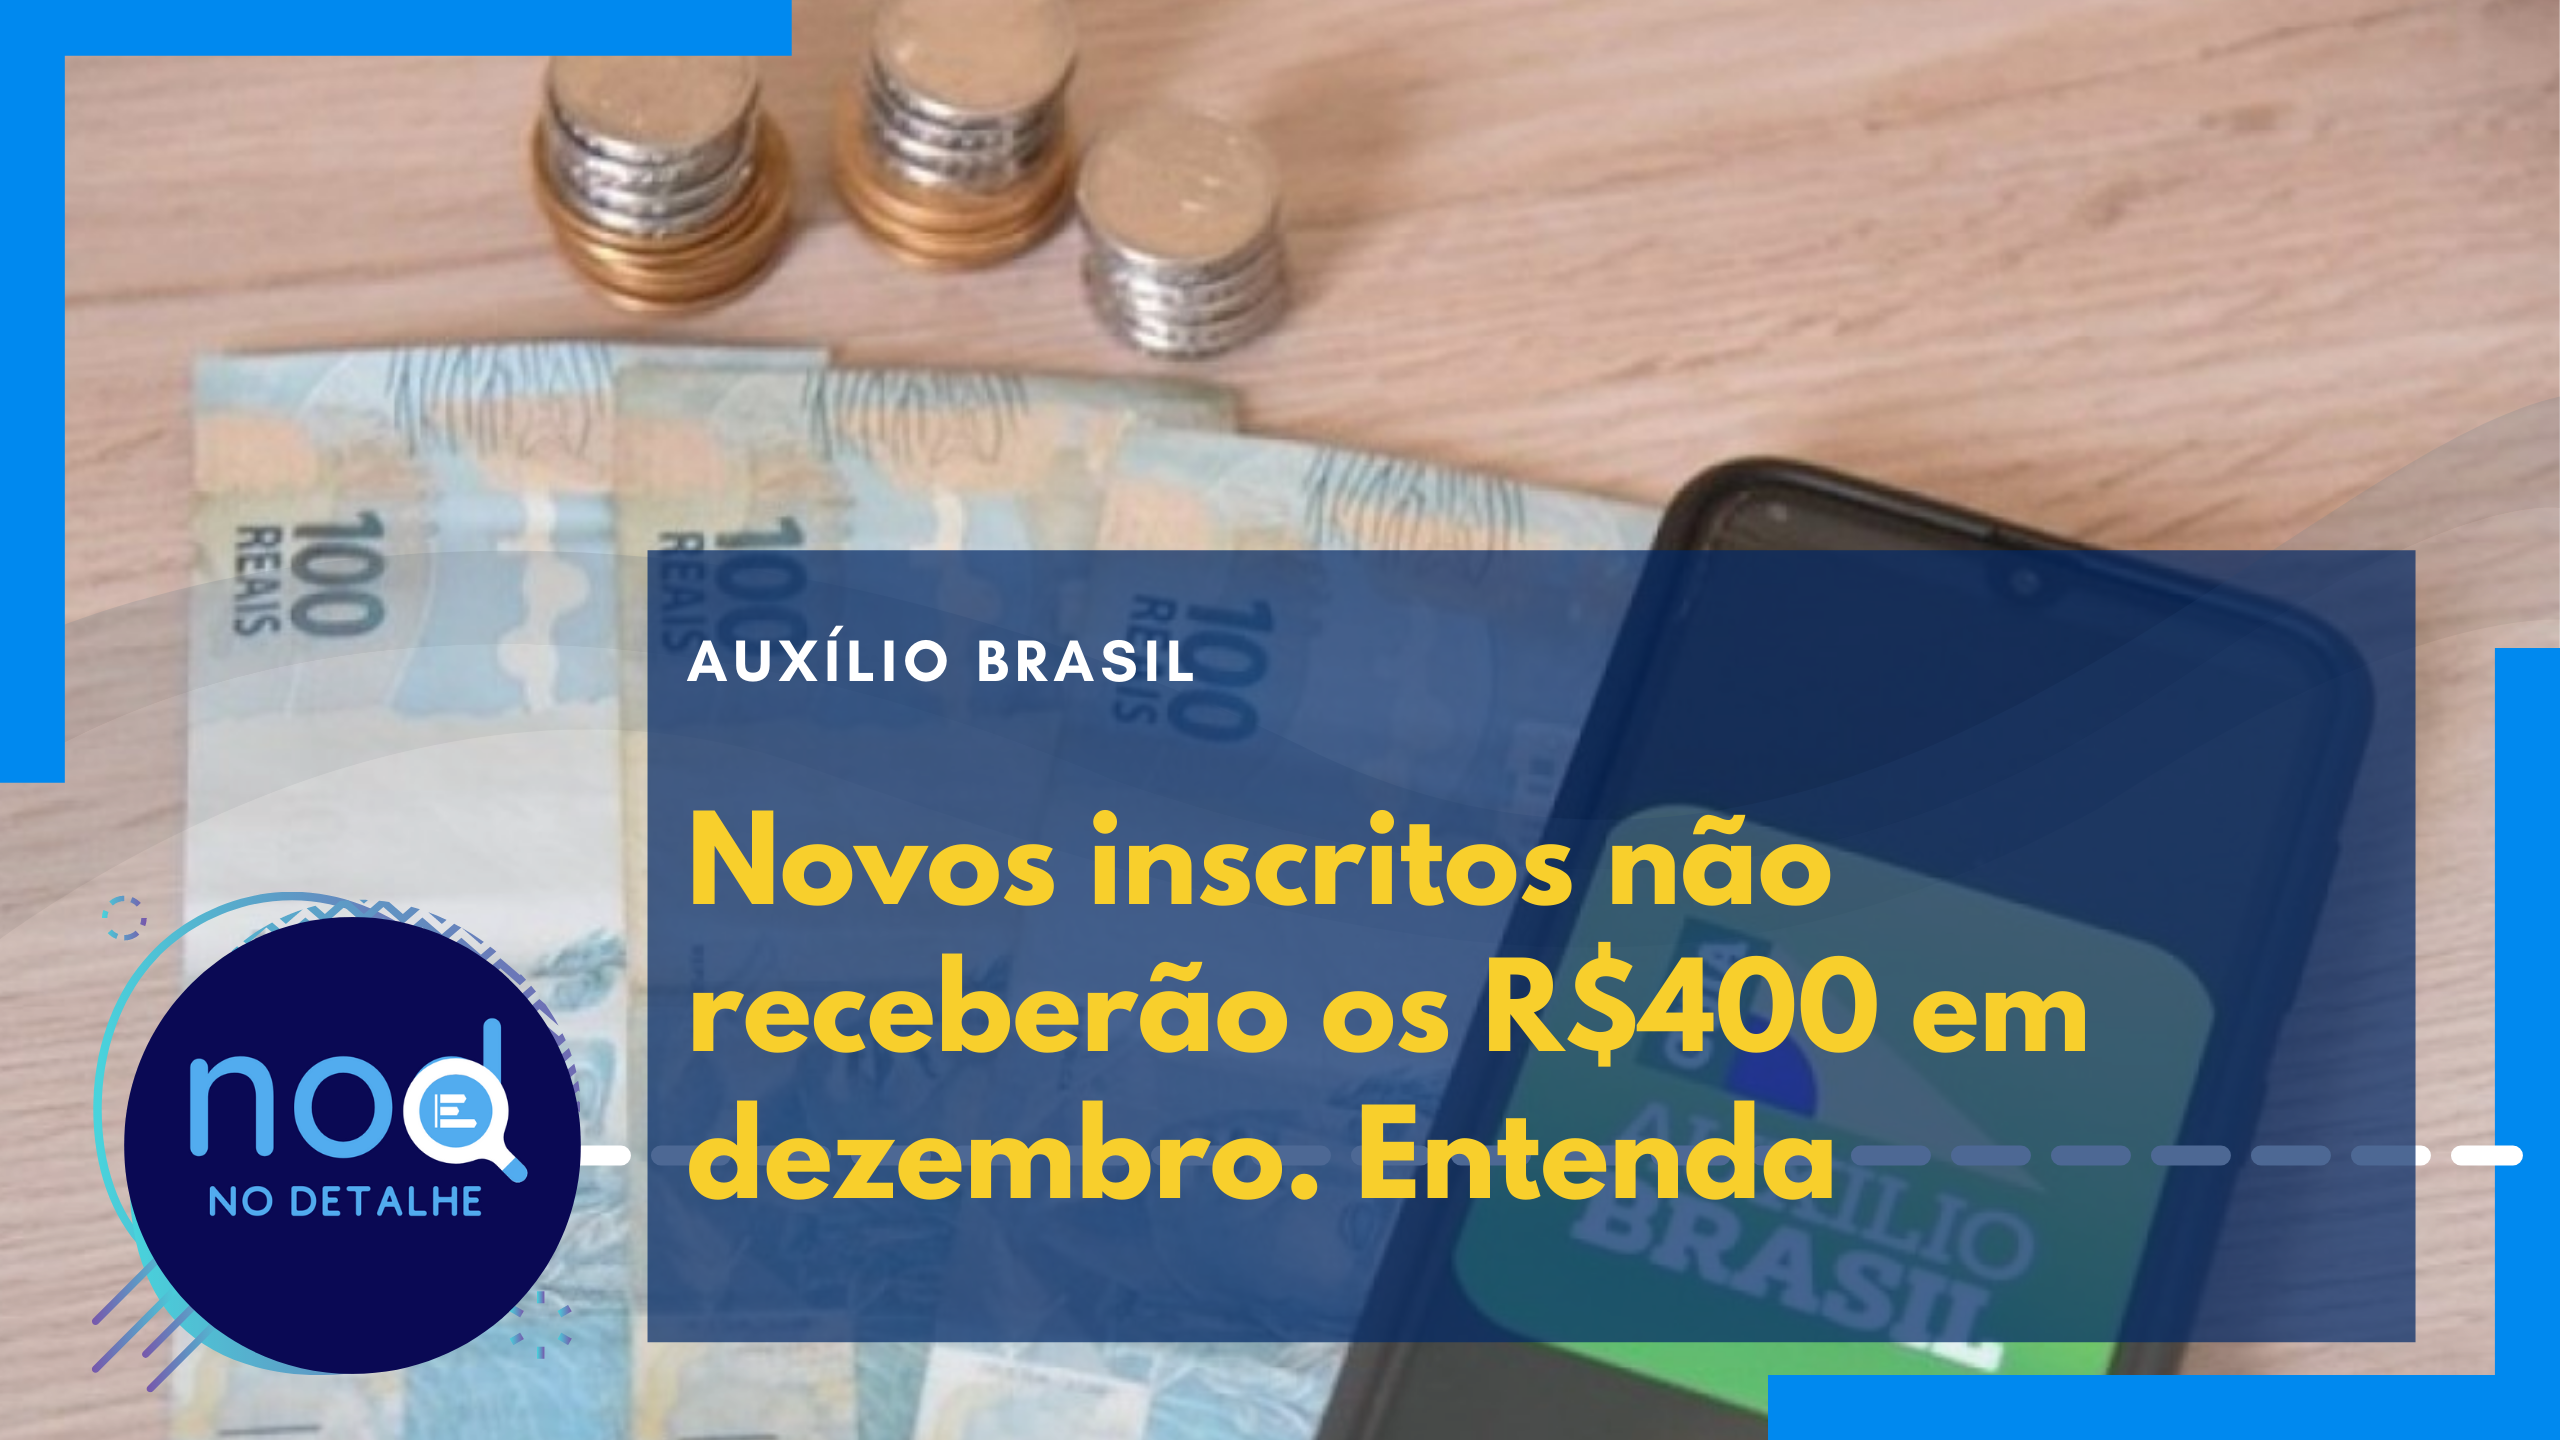 Auxílio Brasil - Novos inscritos não receberão os R$400 em dezembro.